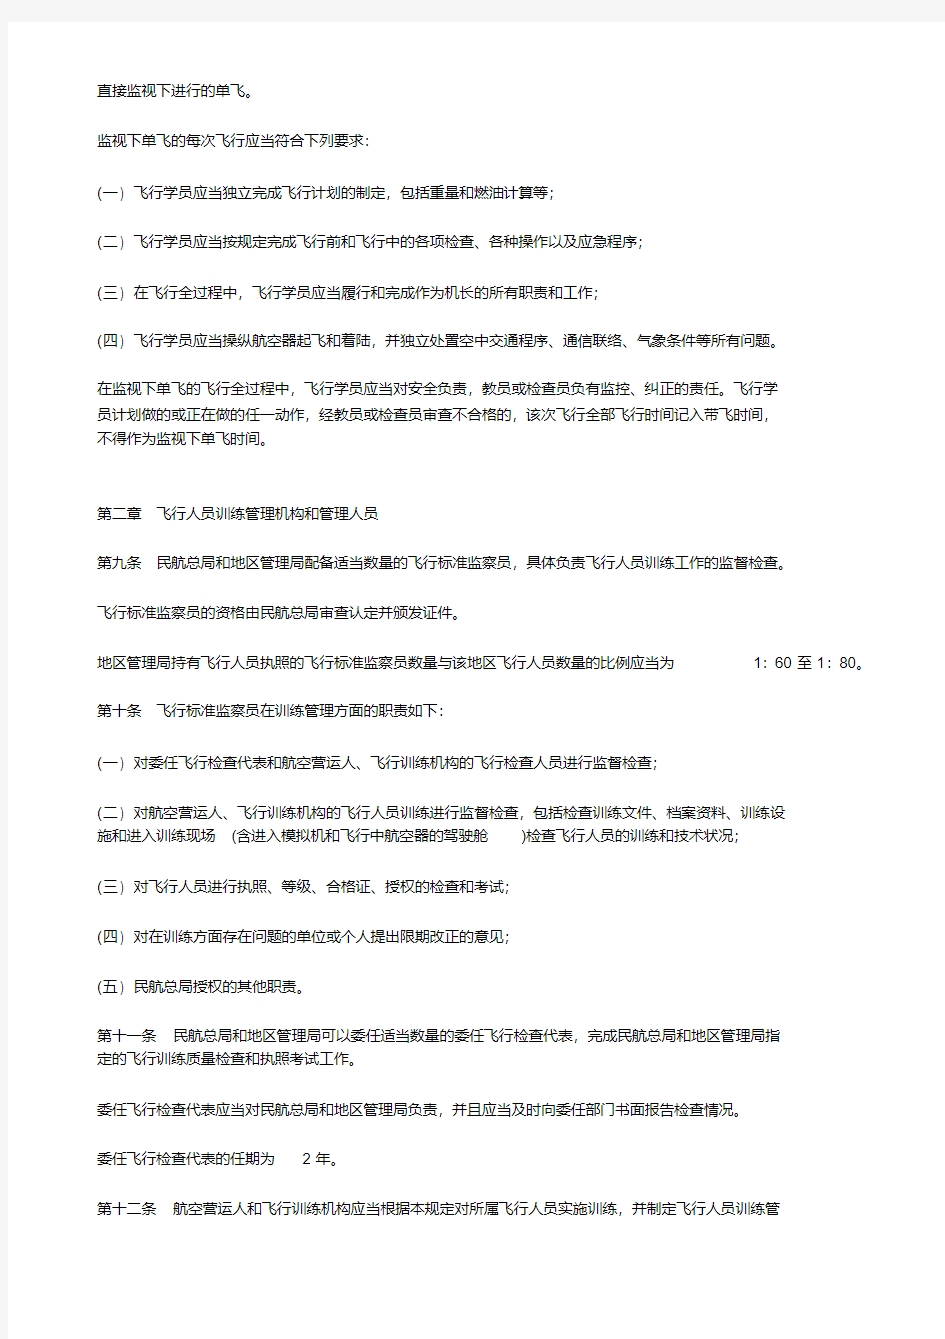 中国民用航空飞行人员训练管理规定CCAR-62FS教学内容